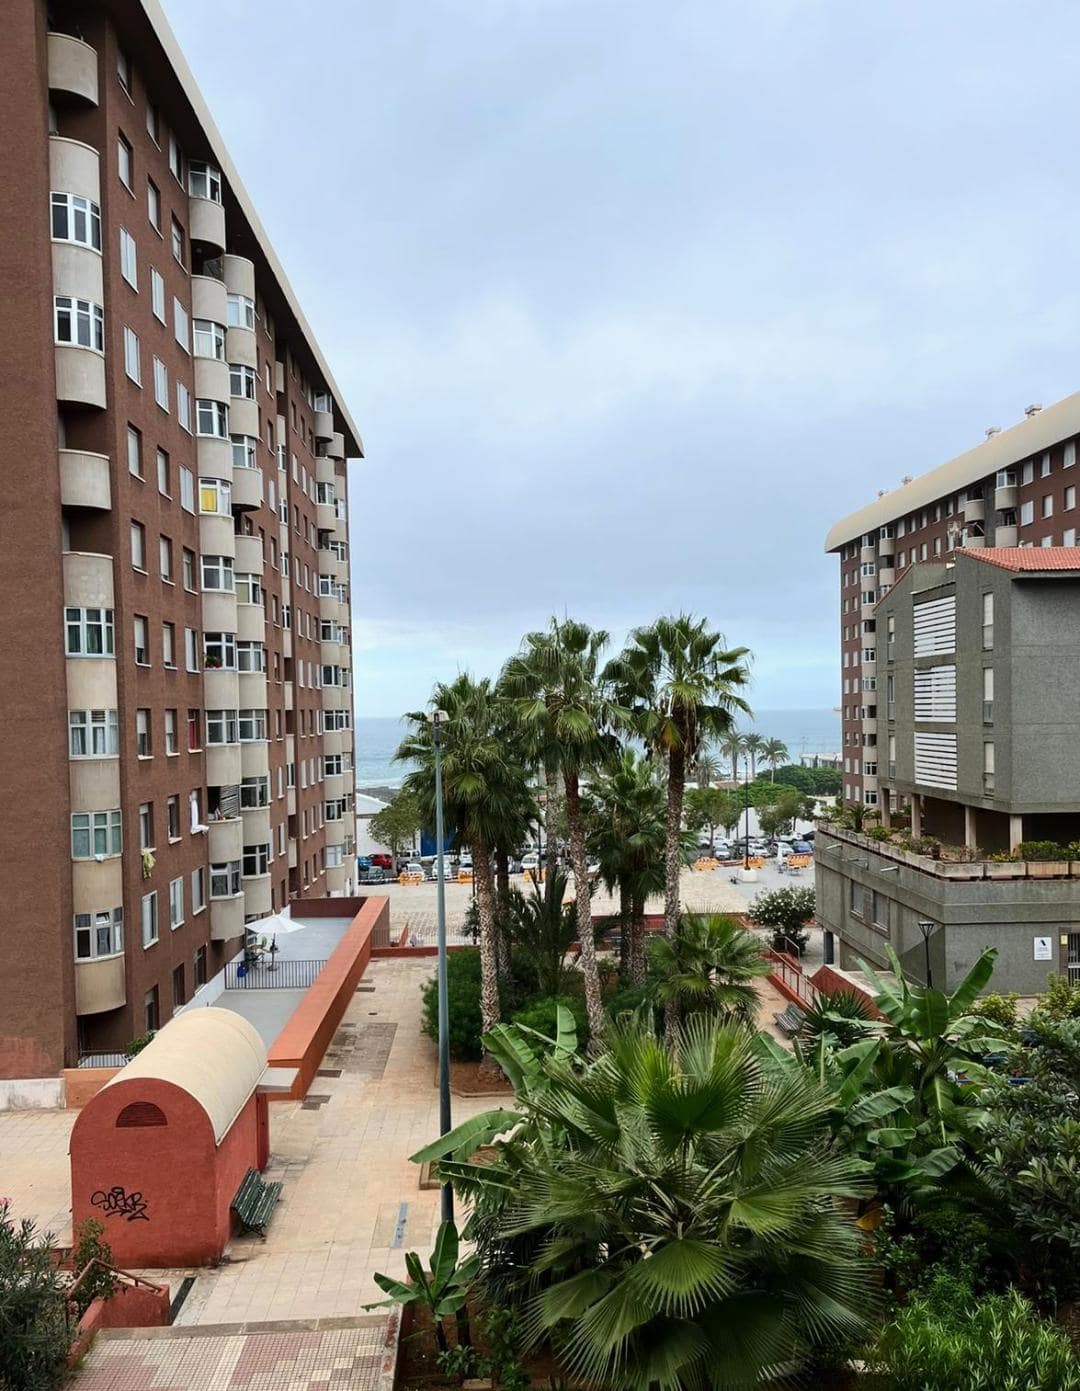 Výhľad z balkóna v Puerto de la Cruz na palmy a oceán.